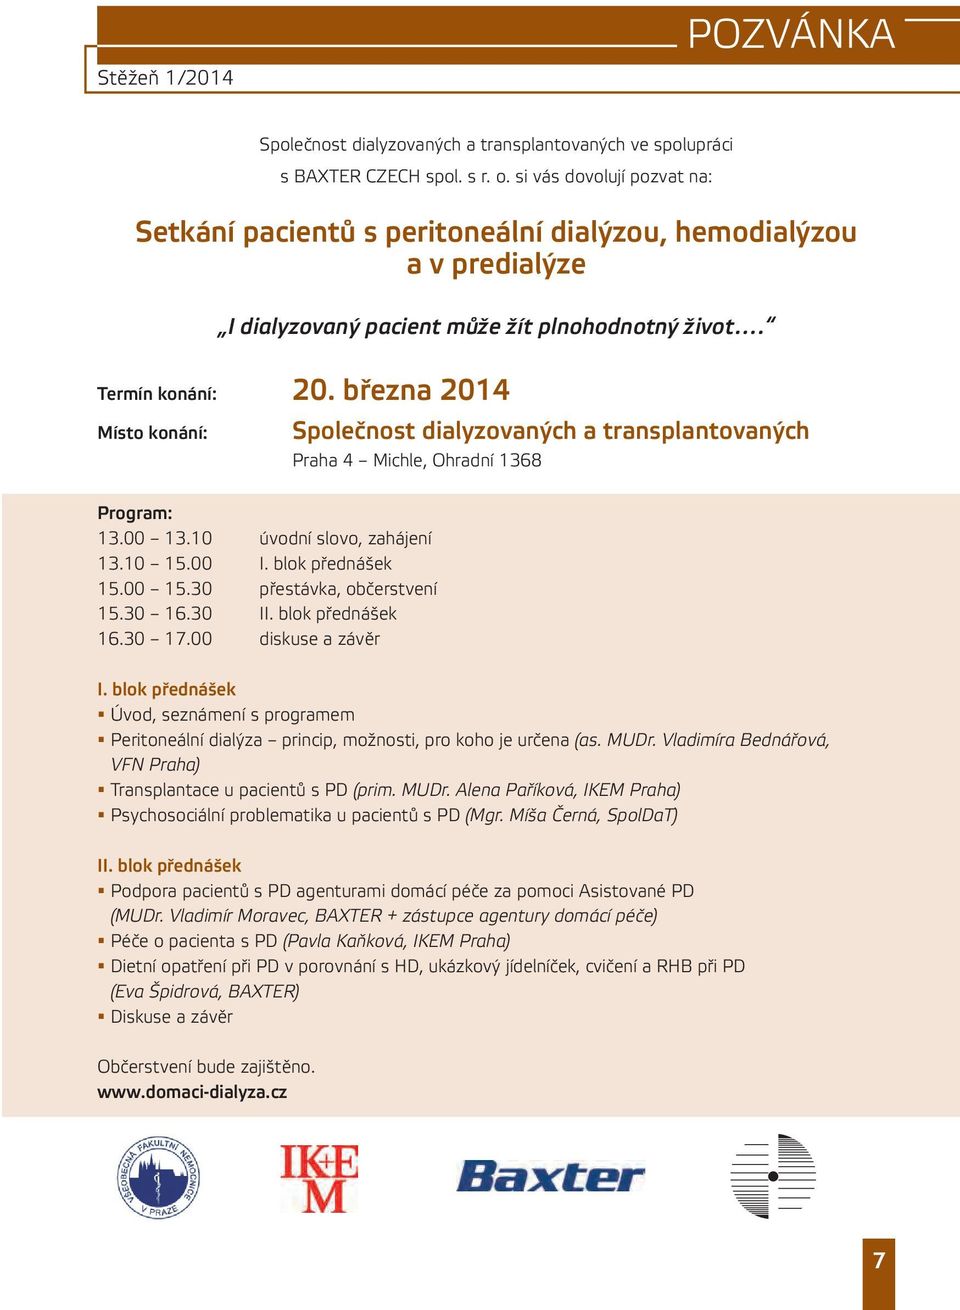 března 2014 Místo konání: společnost dialyzovaných a transplantovaných Praha 4 Michle, Ohradní 1368 program: 13.00 13.10 úvodní slovo, zahájení 13.10 15.00 I. blok přednášek 15.00 15.